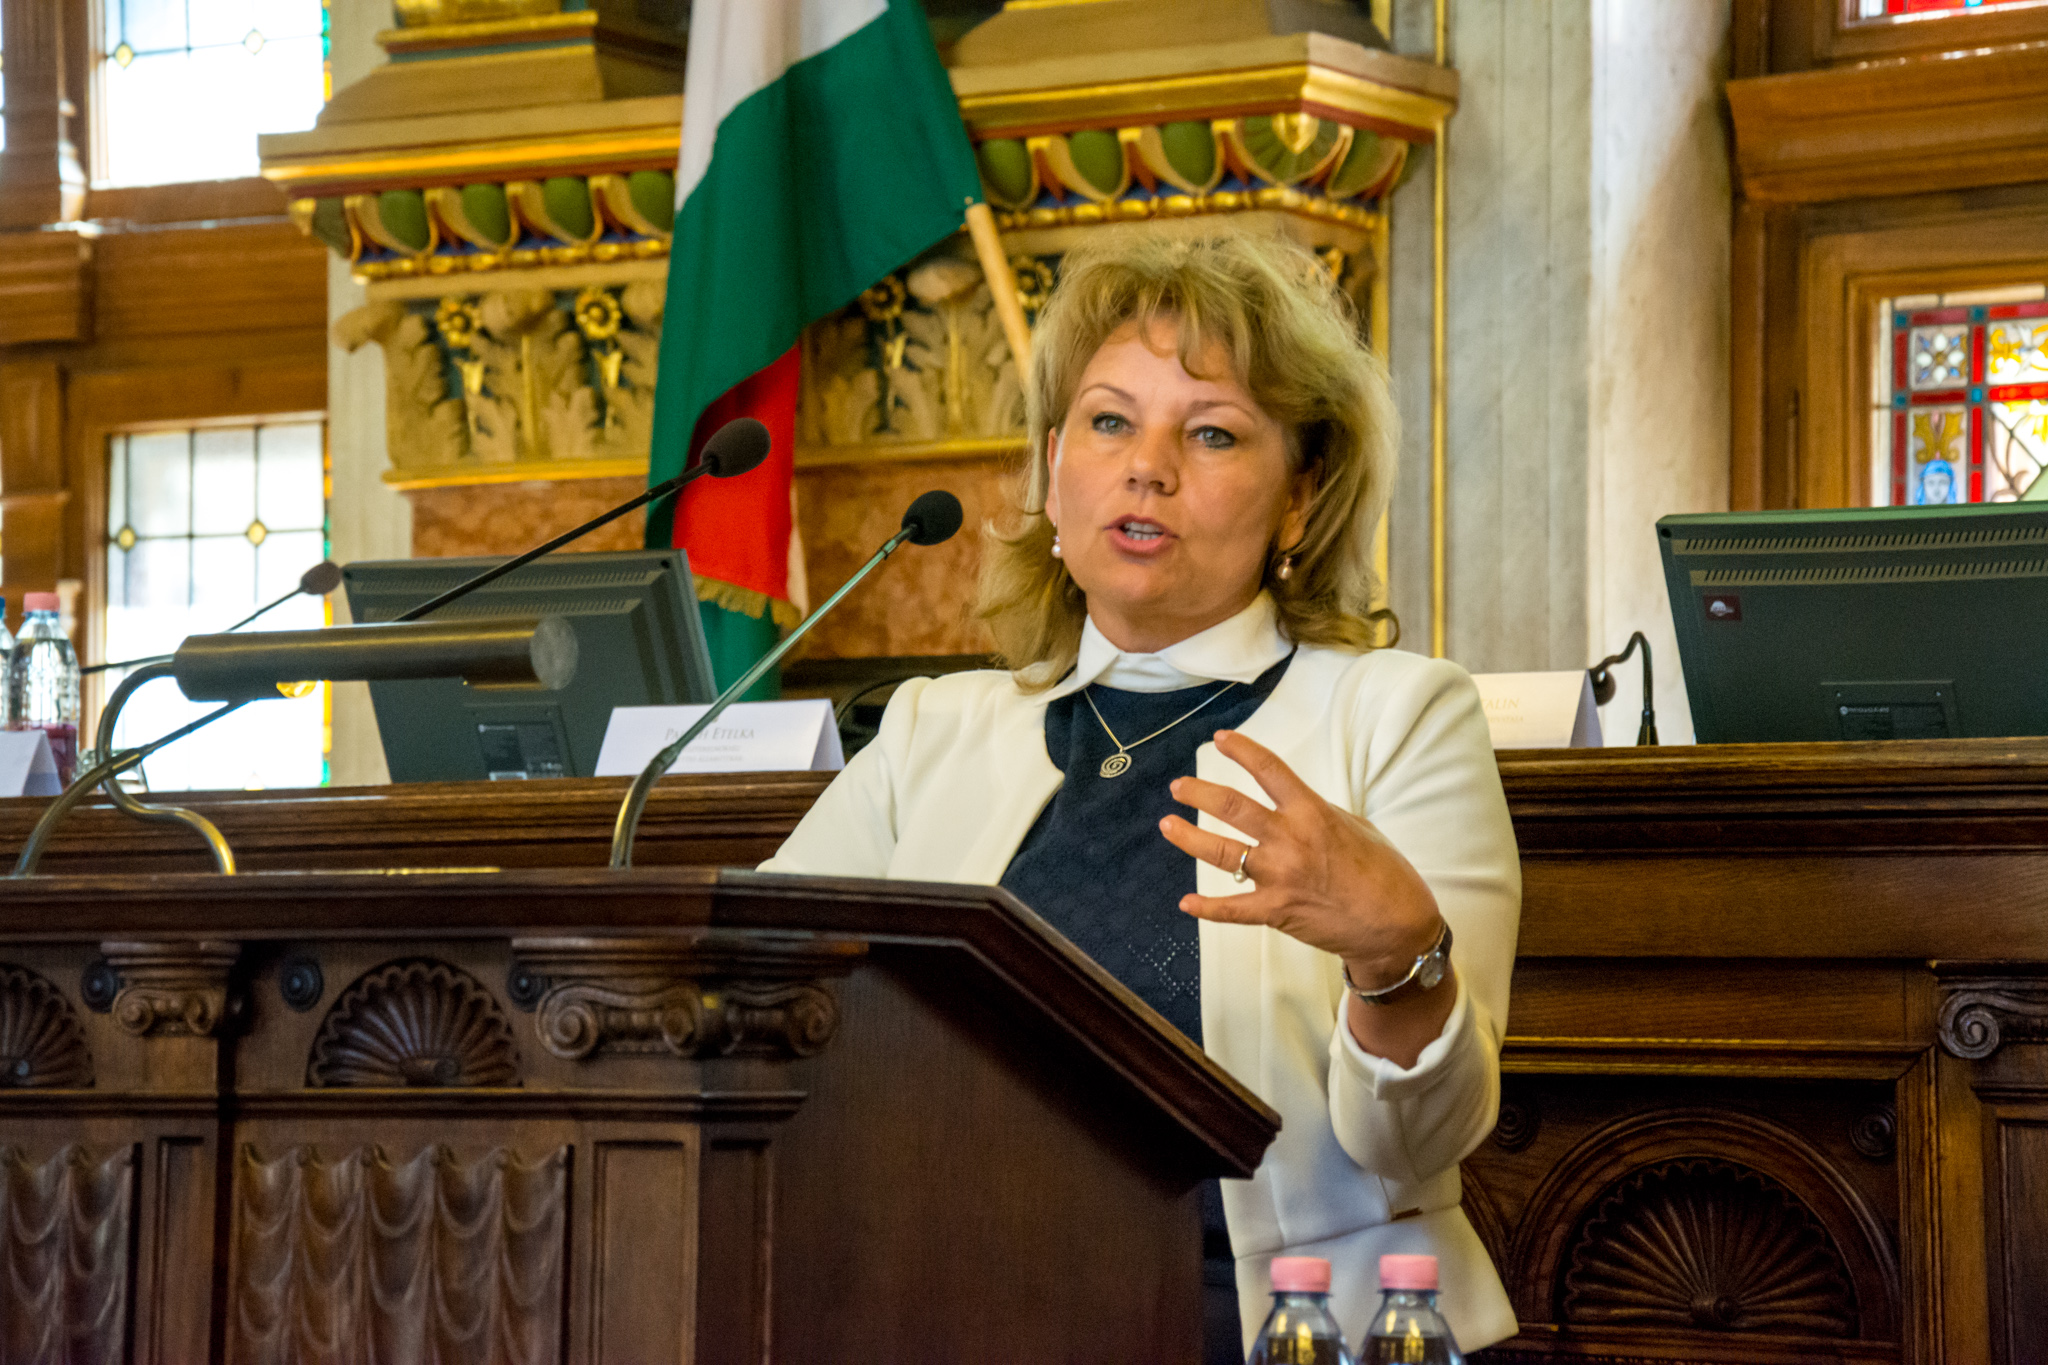 Varga József felesége, Palich Etelka, a Miniszterelnökség területi közigazgatás irányításáért felelős helyettes államtitkára